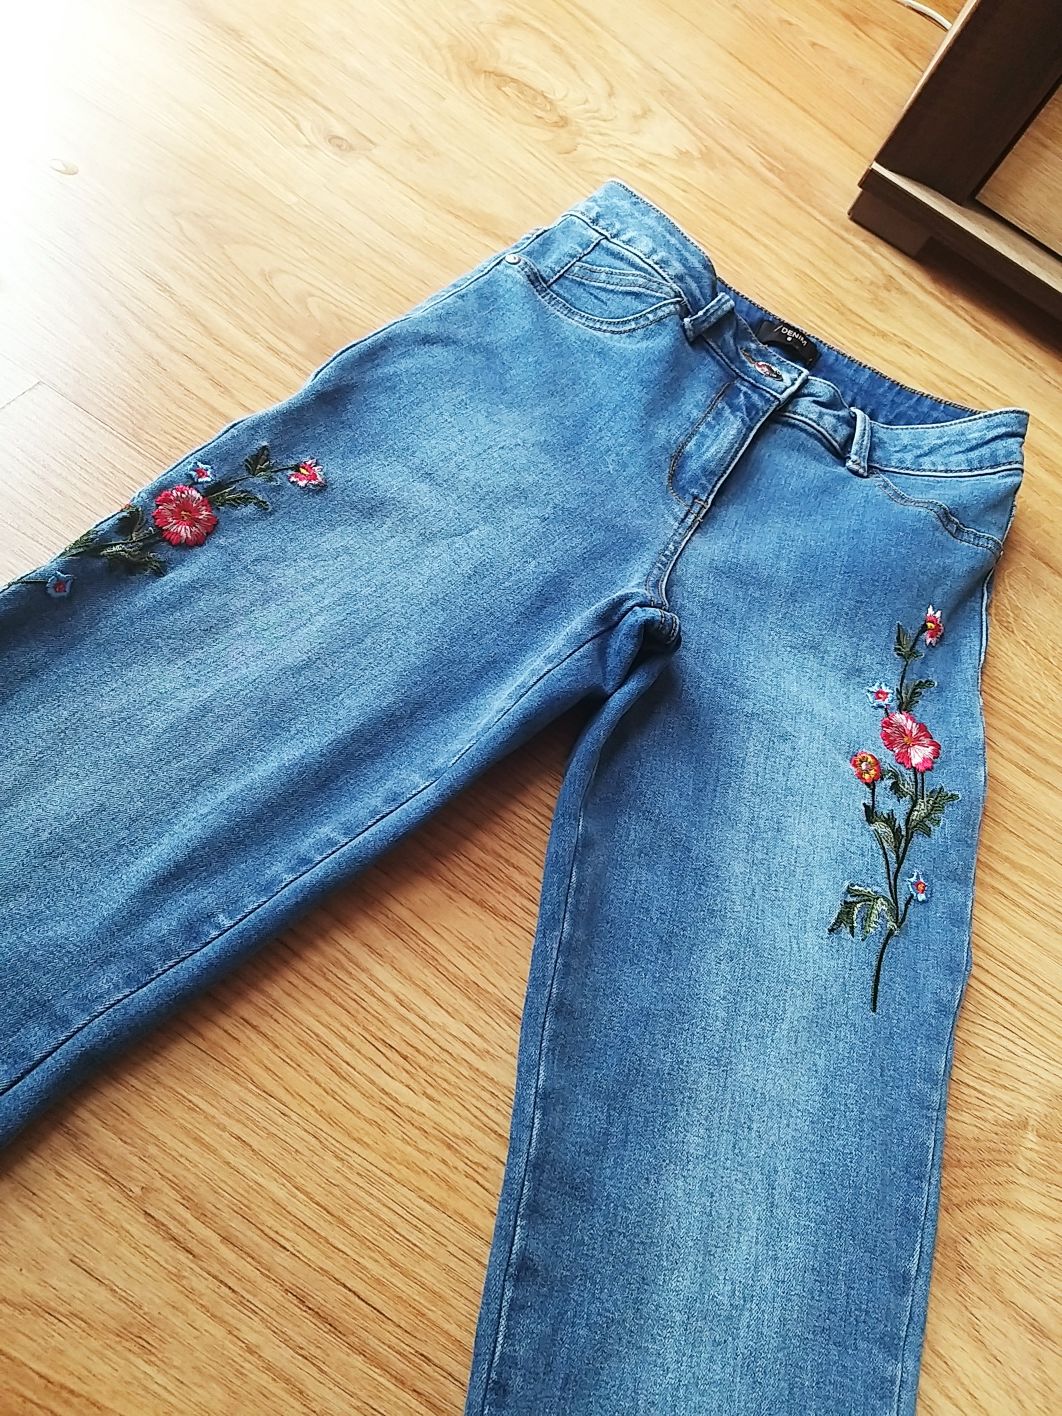 Jeansy spodnie rurki jeansowe denim s 36 xs 34 haft haftem cropped 7/8